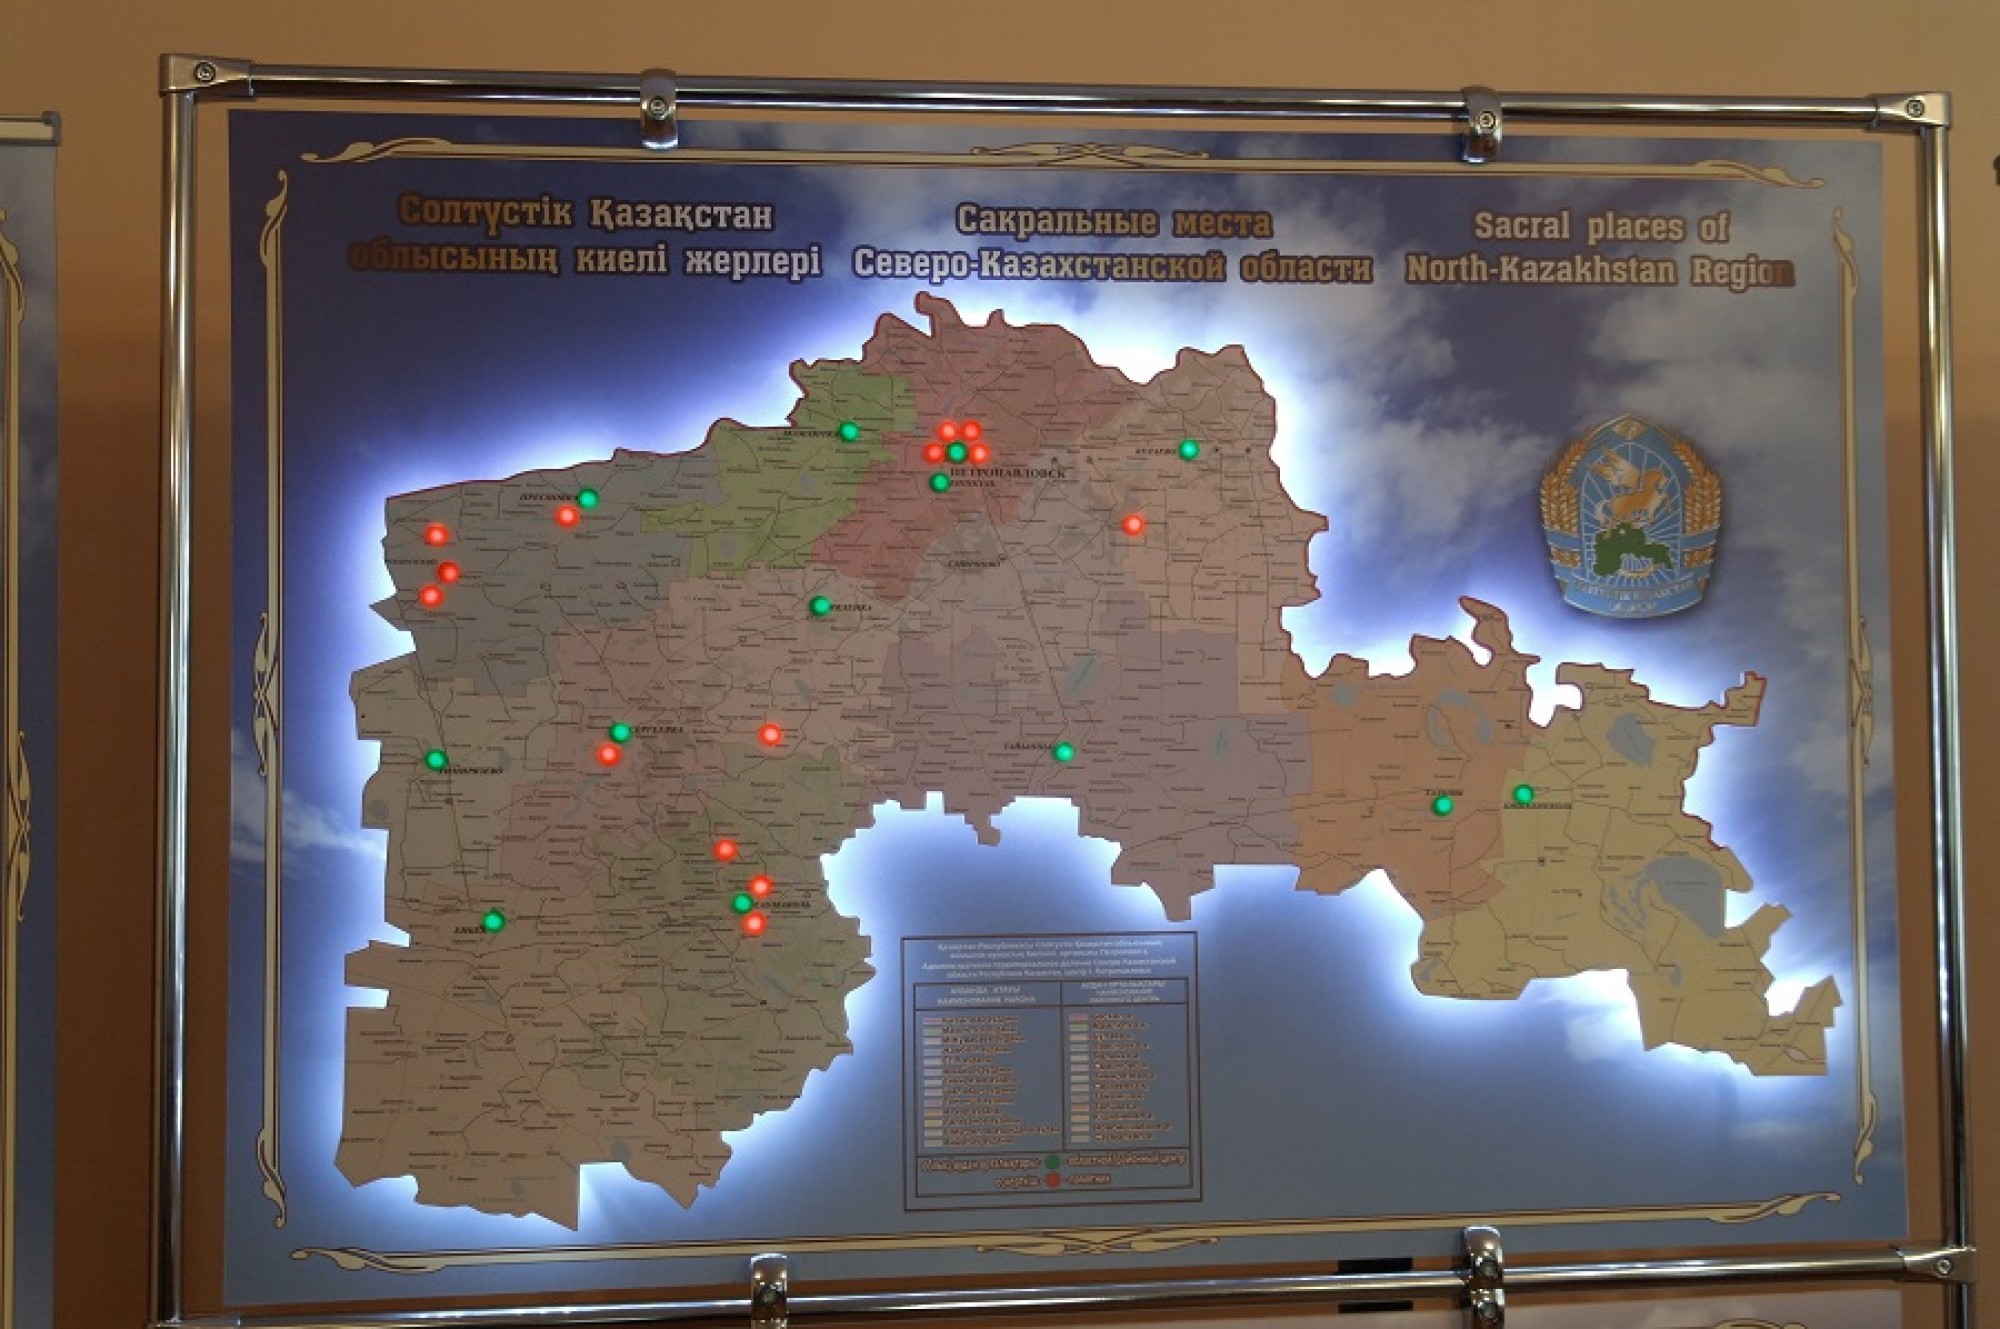 Создана карта сакральных мест Северного Казахстана